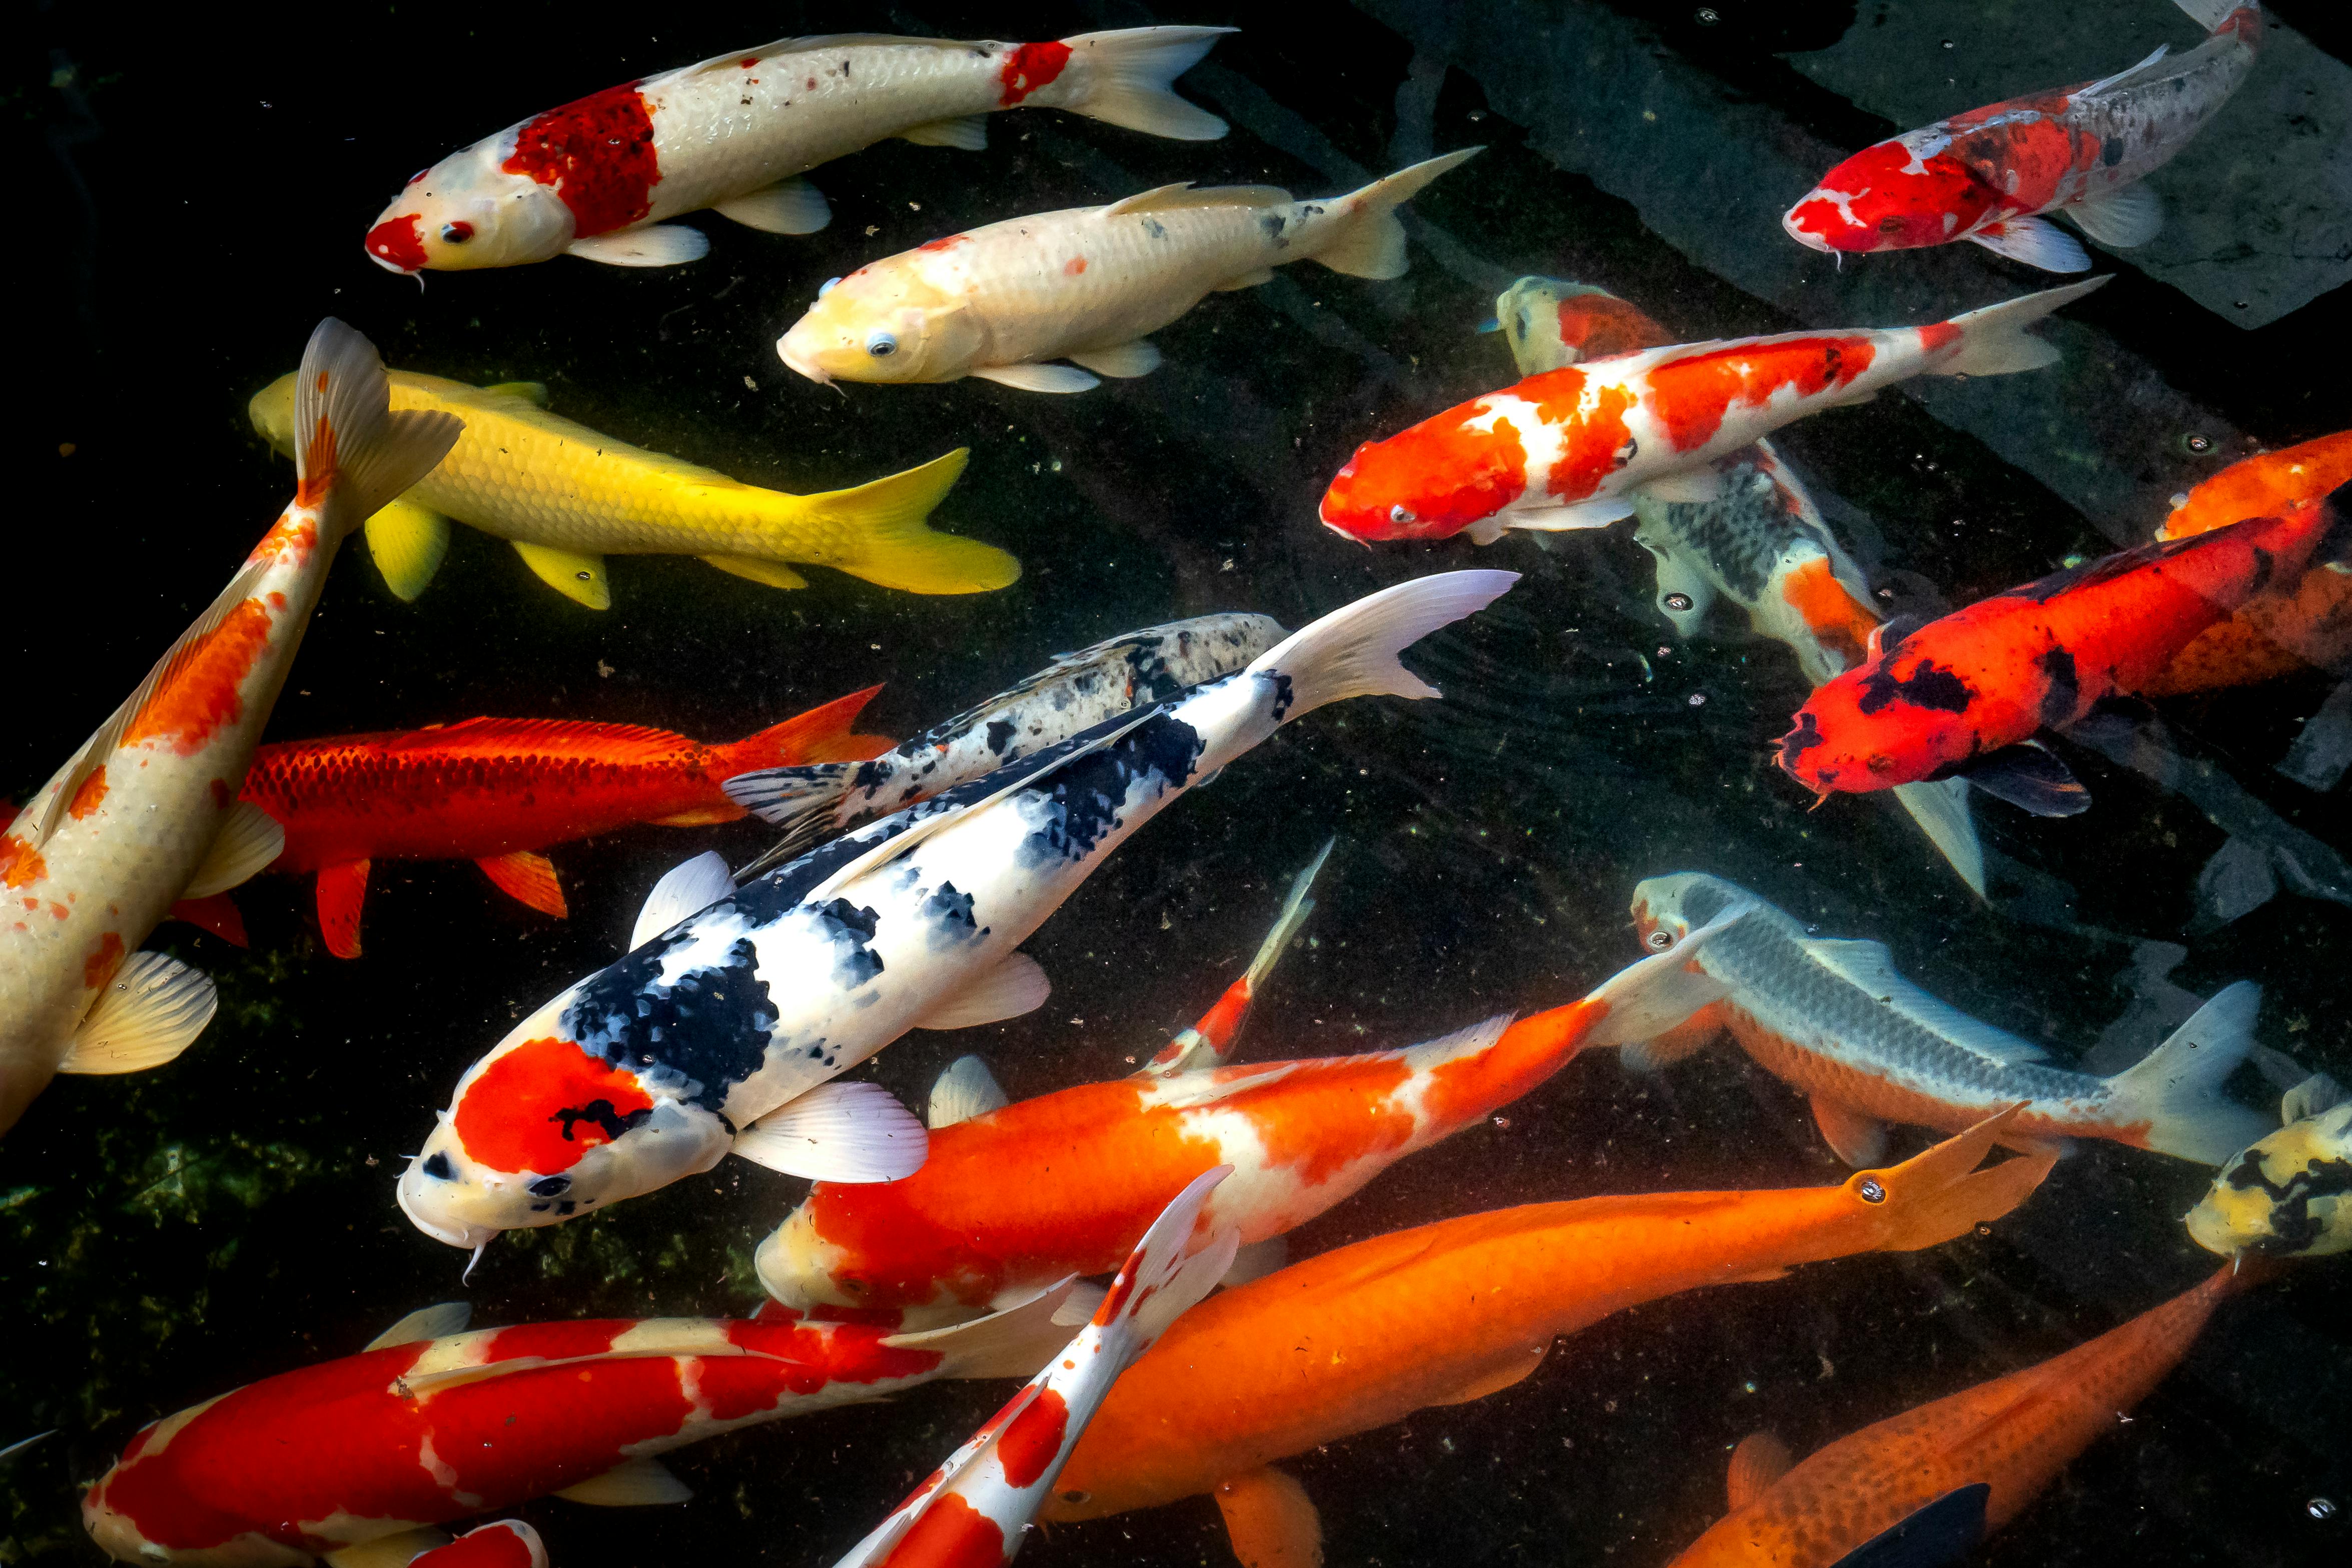 Cá Koi nhiều màu sắc dưới đáy hồ là một cảnh tượng vô cùng độc đáo và đẹp mắt. Với những chú cá Koi có vảy nhấp nháy dưới ánh nắng mặt trời và màu sắc đa dạng, bạn sẽ có cảm giác như đang lạc vào một thế giới hoàn toàn khác biệt. Hãy cùng nhìn ngắm những chú cá Koi dưới đáy hồ và khám phá sự đa dạng và phong phú của cuộc sống dưới nước!